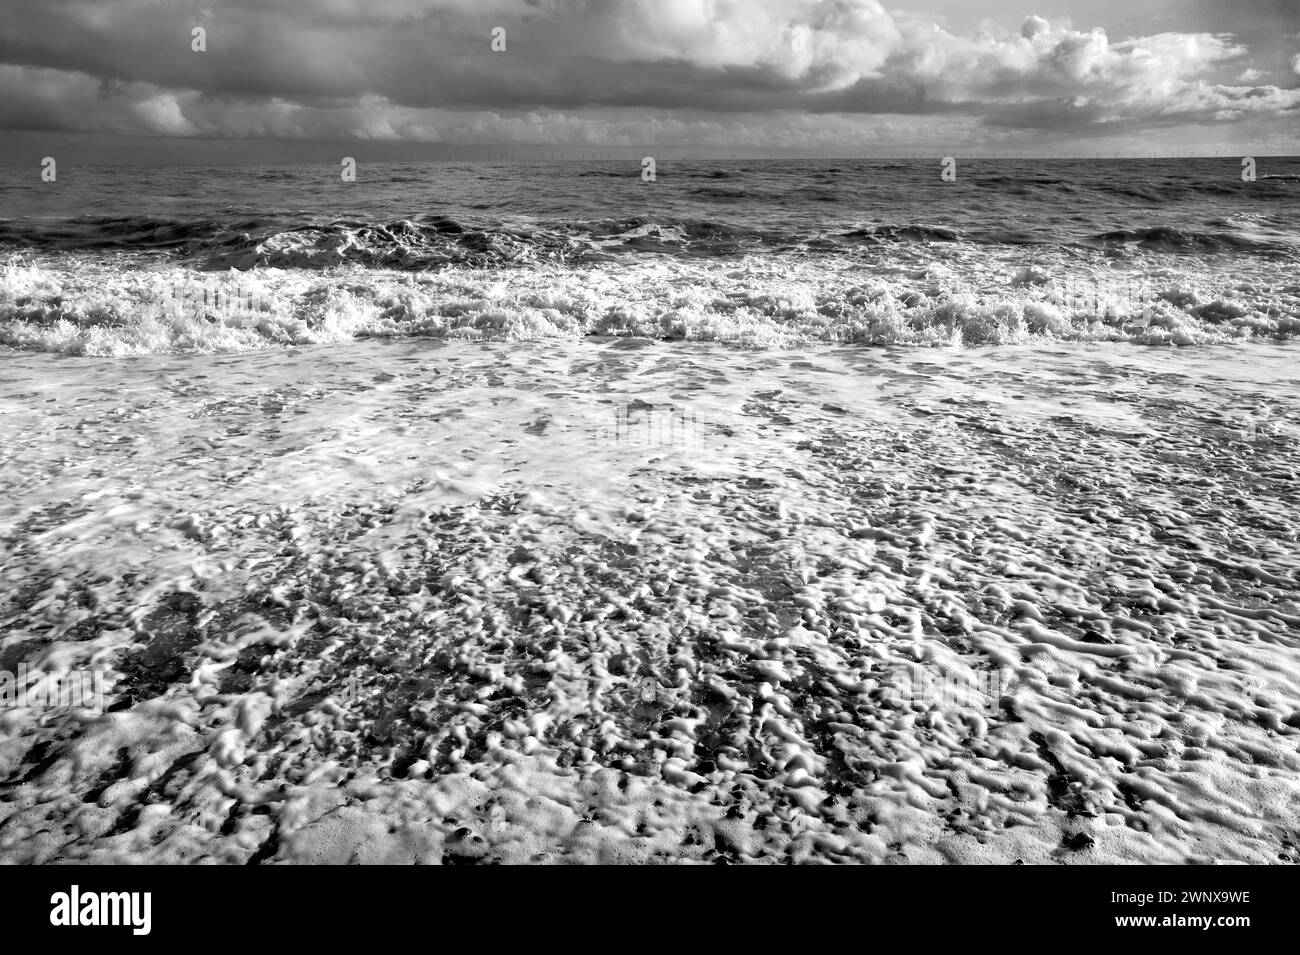 S&W starkes Sonnenlicht von Wellen, die auf Kieselstrand brechen, Surfen, Sprudeln und Spritzen, grünes Meer, ein blauer Himmel mit wehenden weißen Wolken Südküste Englands Stockfoto